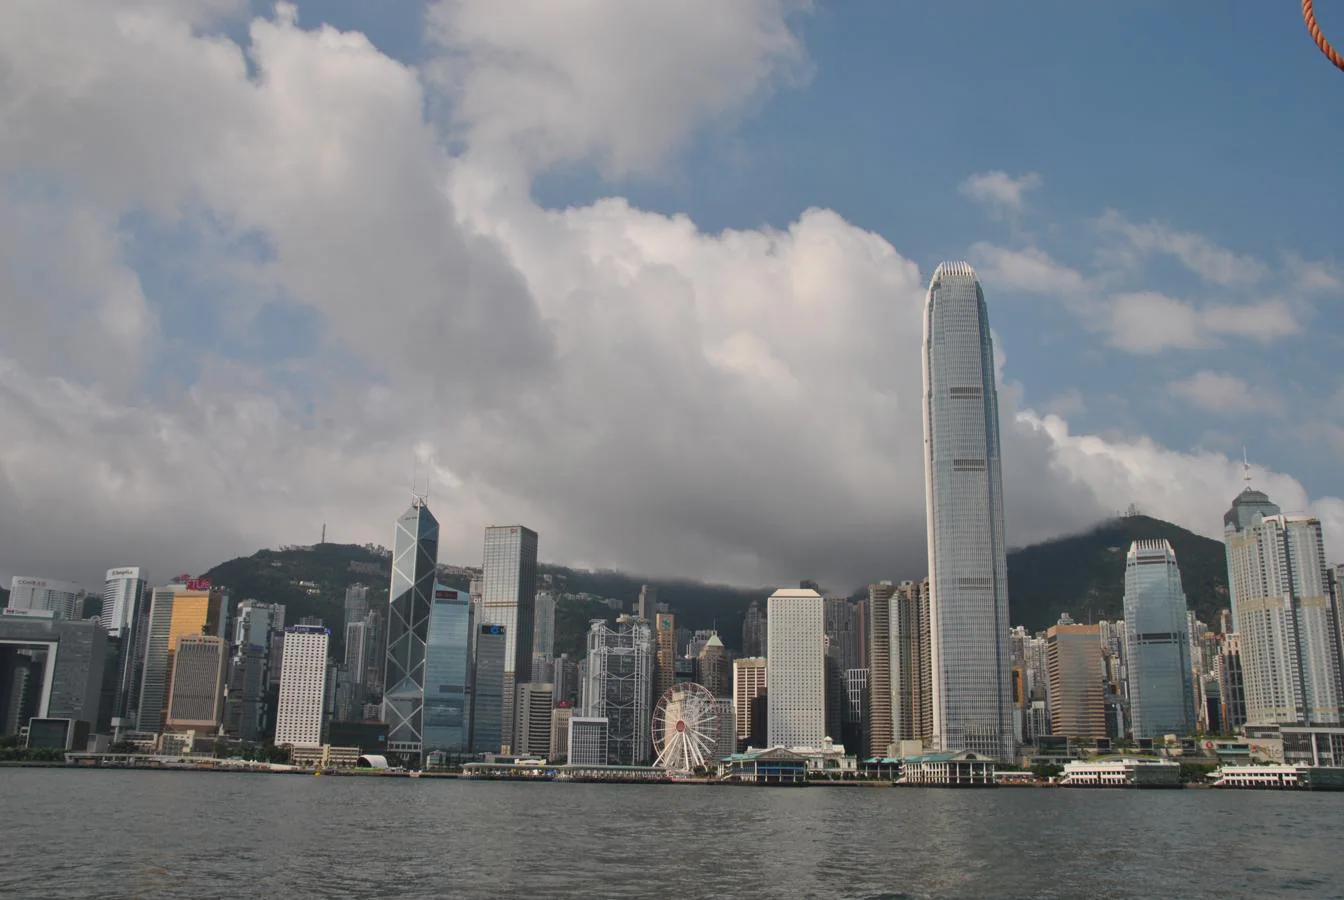 Skyline de Hong Kong. Cedida por China a Reino Unido en 1842, la isla de Hong Kong permanecieron bajo soberanía británica hasta 1997 cuando volvieron al dominio chino pero manteniendo un sistema político propio y un status especial